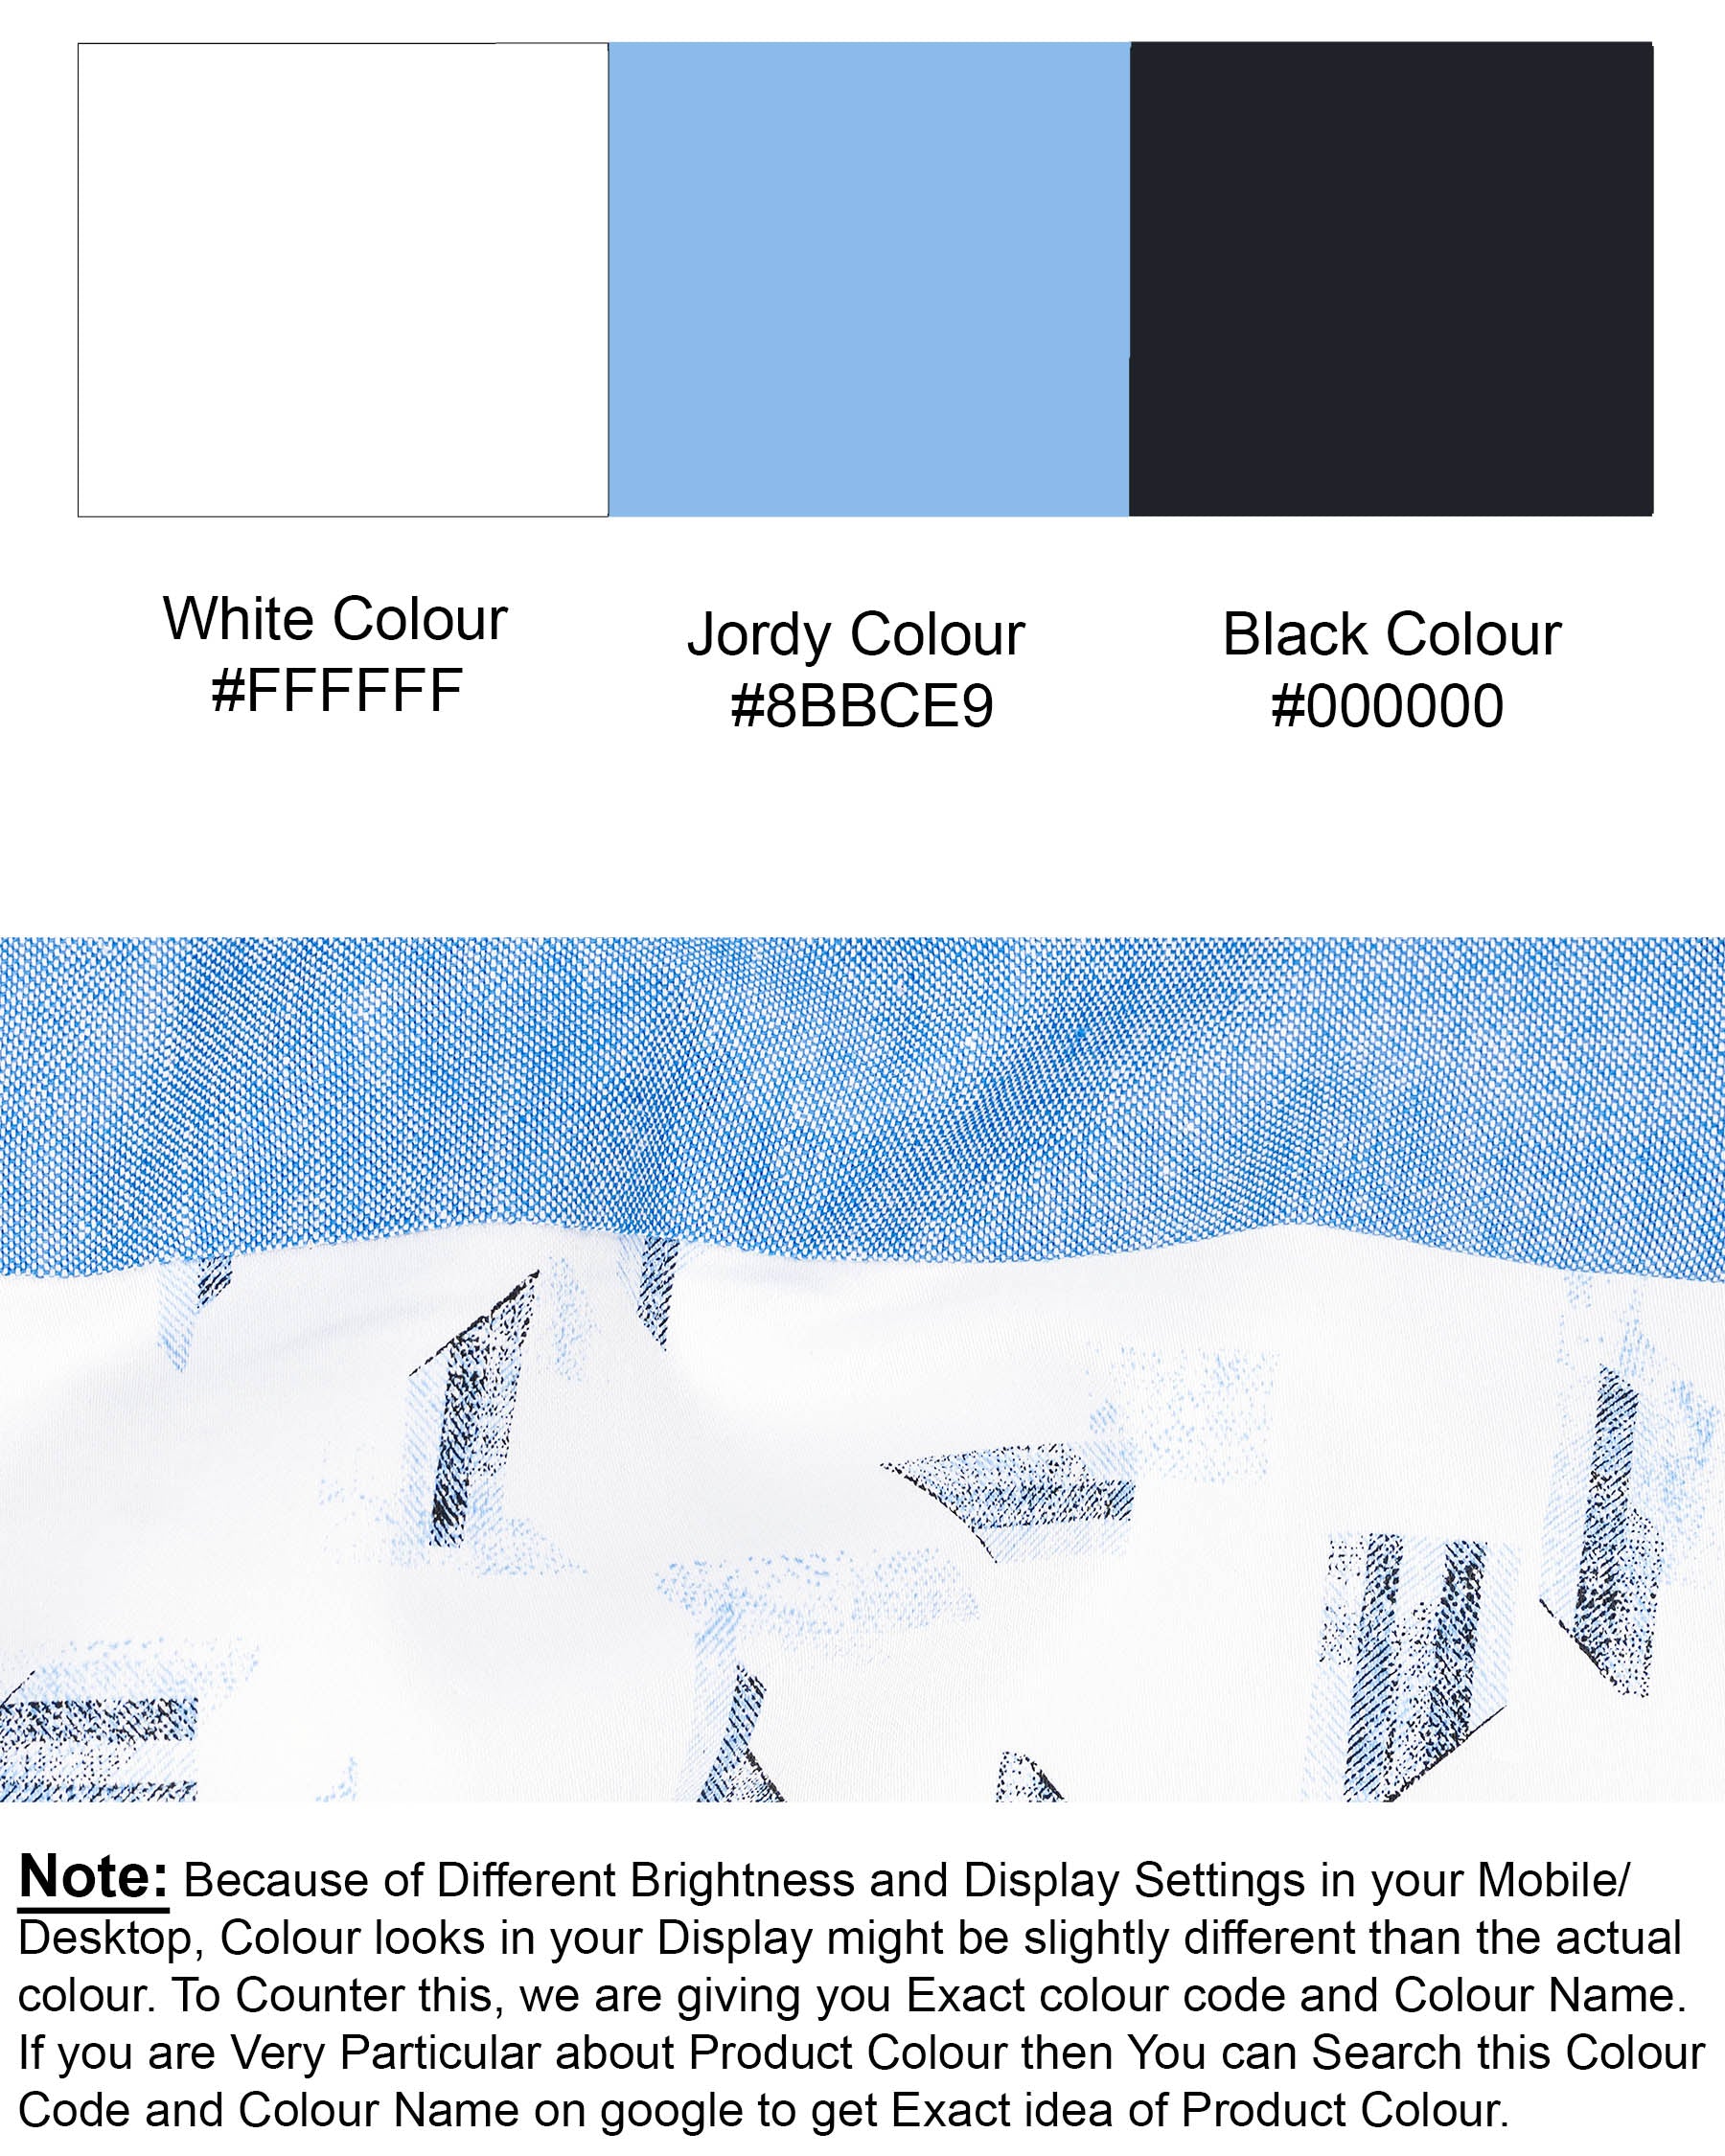 Bright White and Jordy Blue Printed Super Soft Premium Cotton Designer Shirt 7679-P212-38,7679-P212-38,7679-P212-39,7679-P212-39,7679-P212-40,7679-P212-40,7679-P212-42,7679-P212-42,7679-P212-44,7679-P212-44,7679-P212-46,7679-P212-46,7679-P212-48,7679-P212-48,7679-P212-50,7679-P212-50,7679-P212-52,7679-P212-52